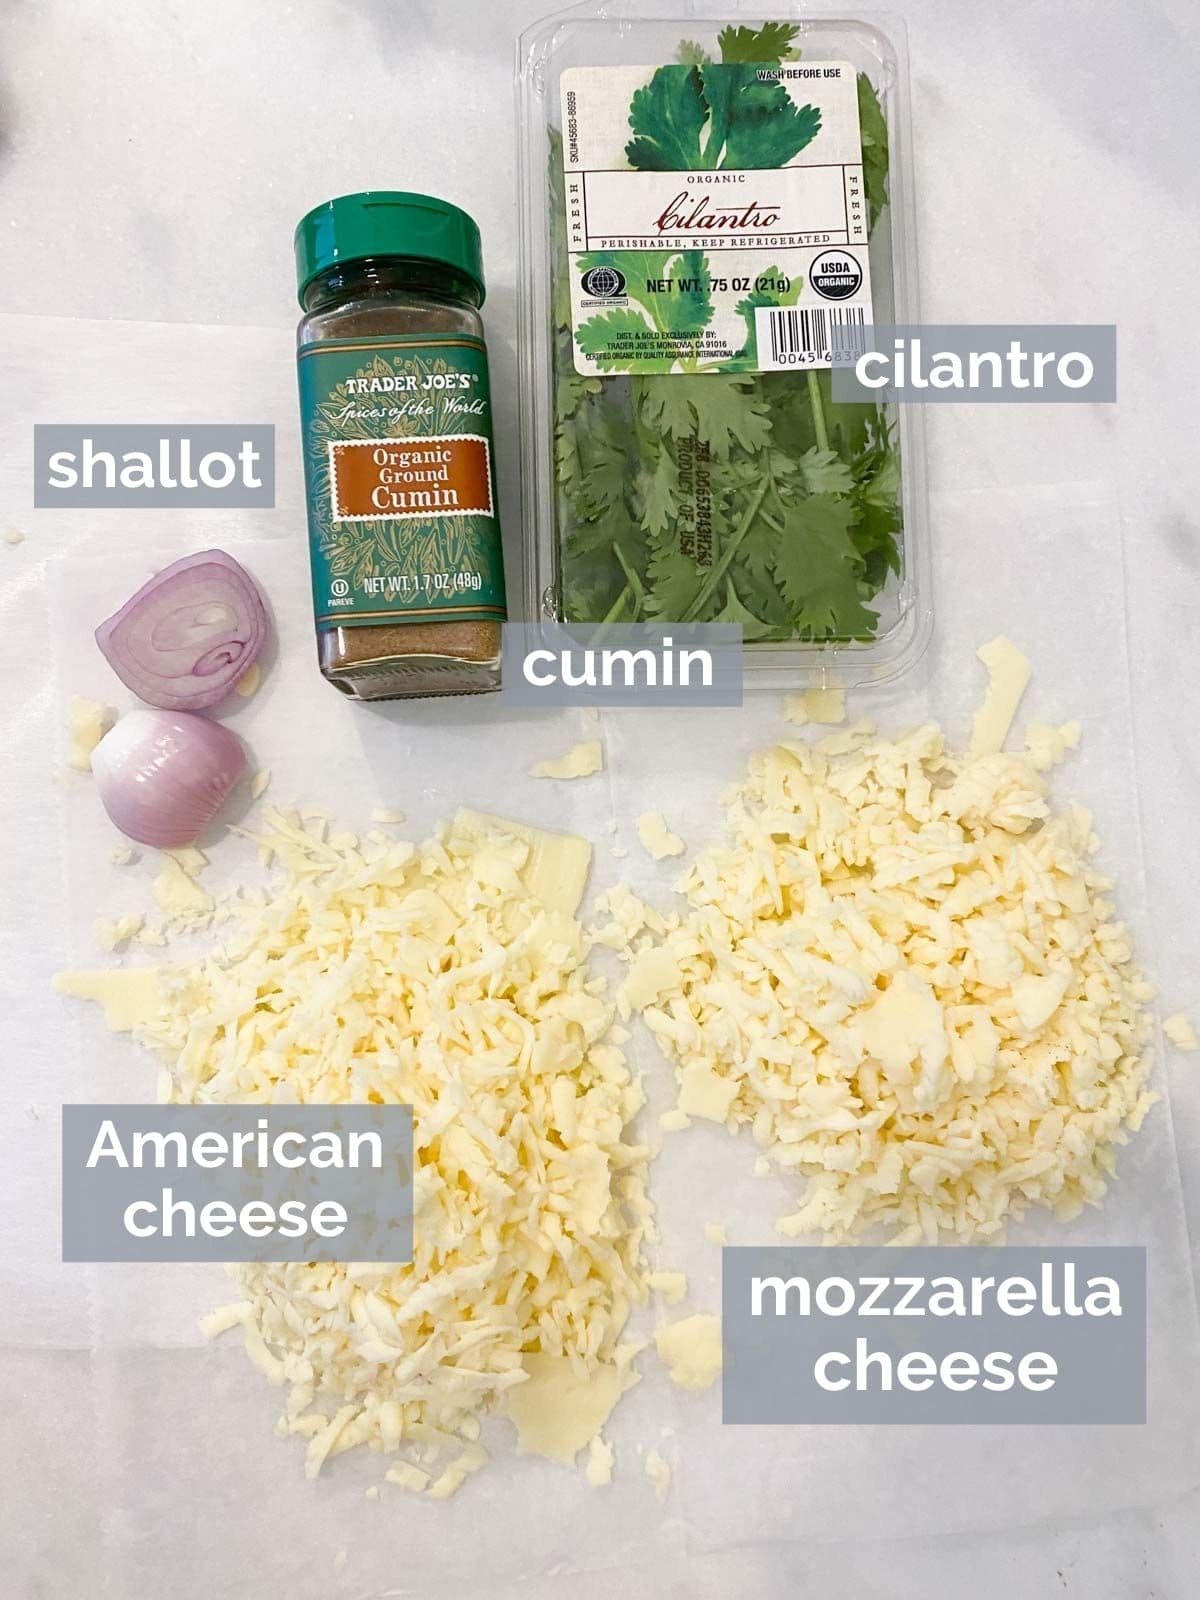 Mozzarella, american cheese, shallot, cumin, and cilantro on a white table